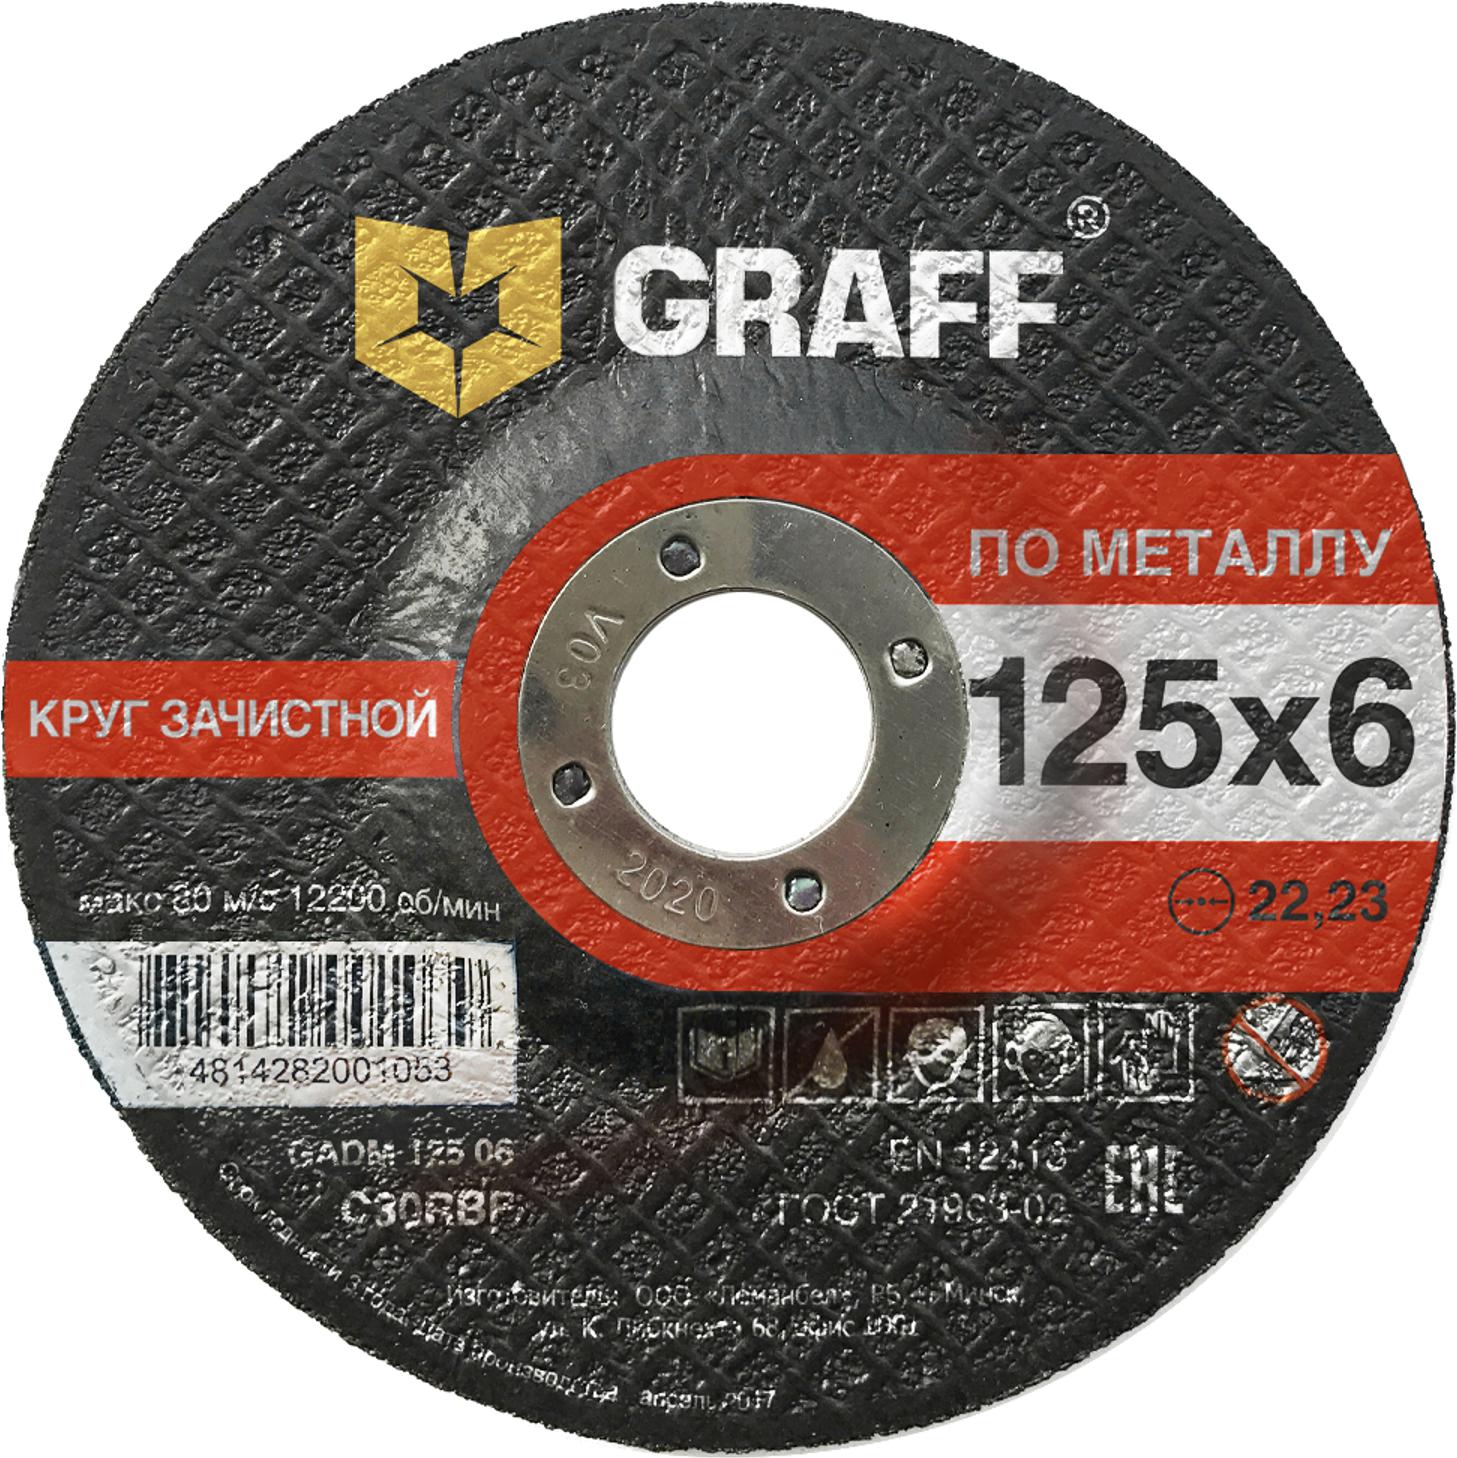 Круг зачистной GRAFF GADM 125 06 шлиф круг для дрели и болгарки santool